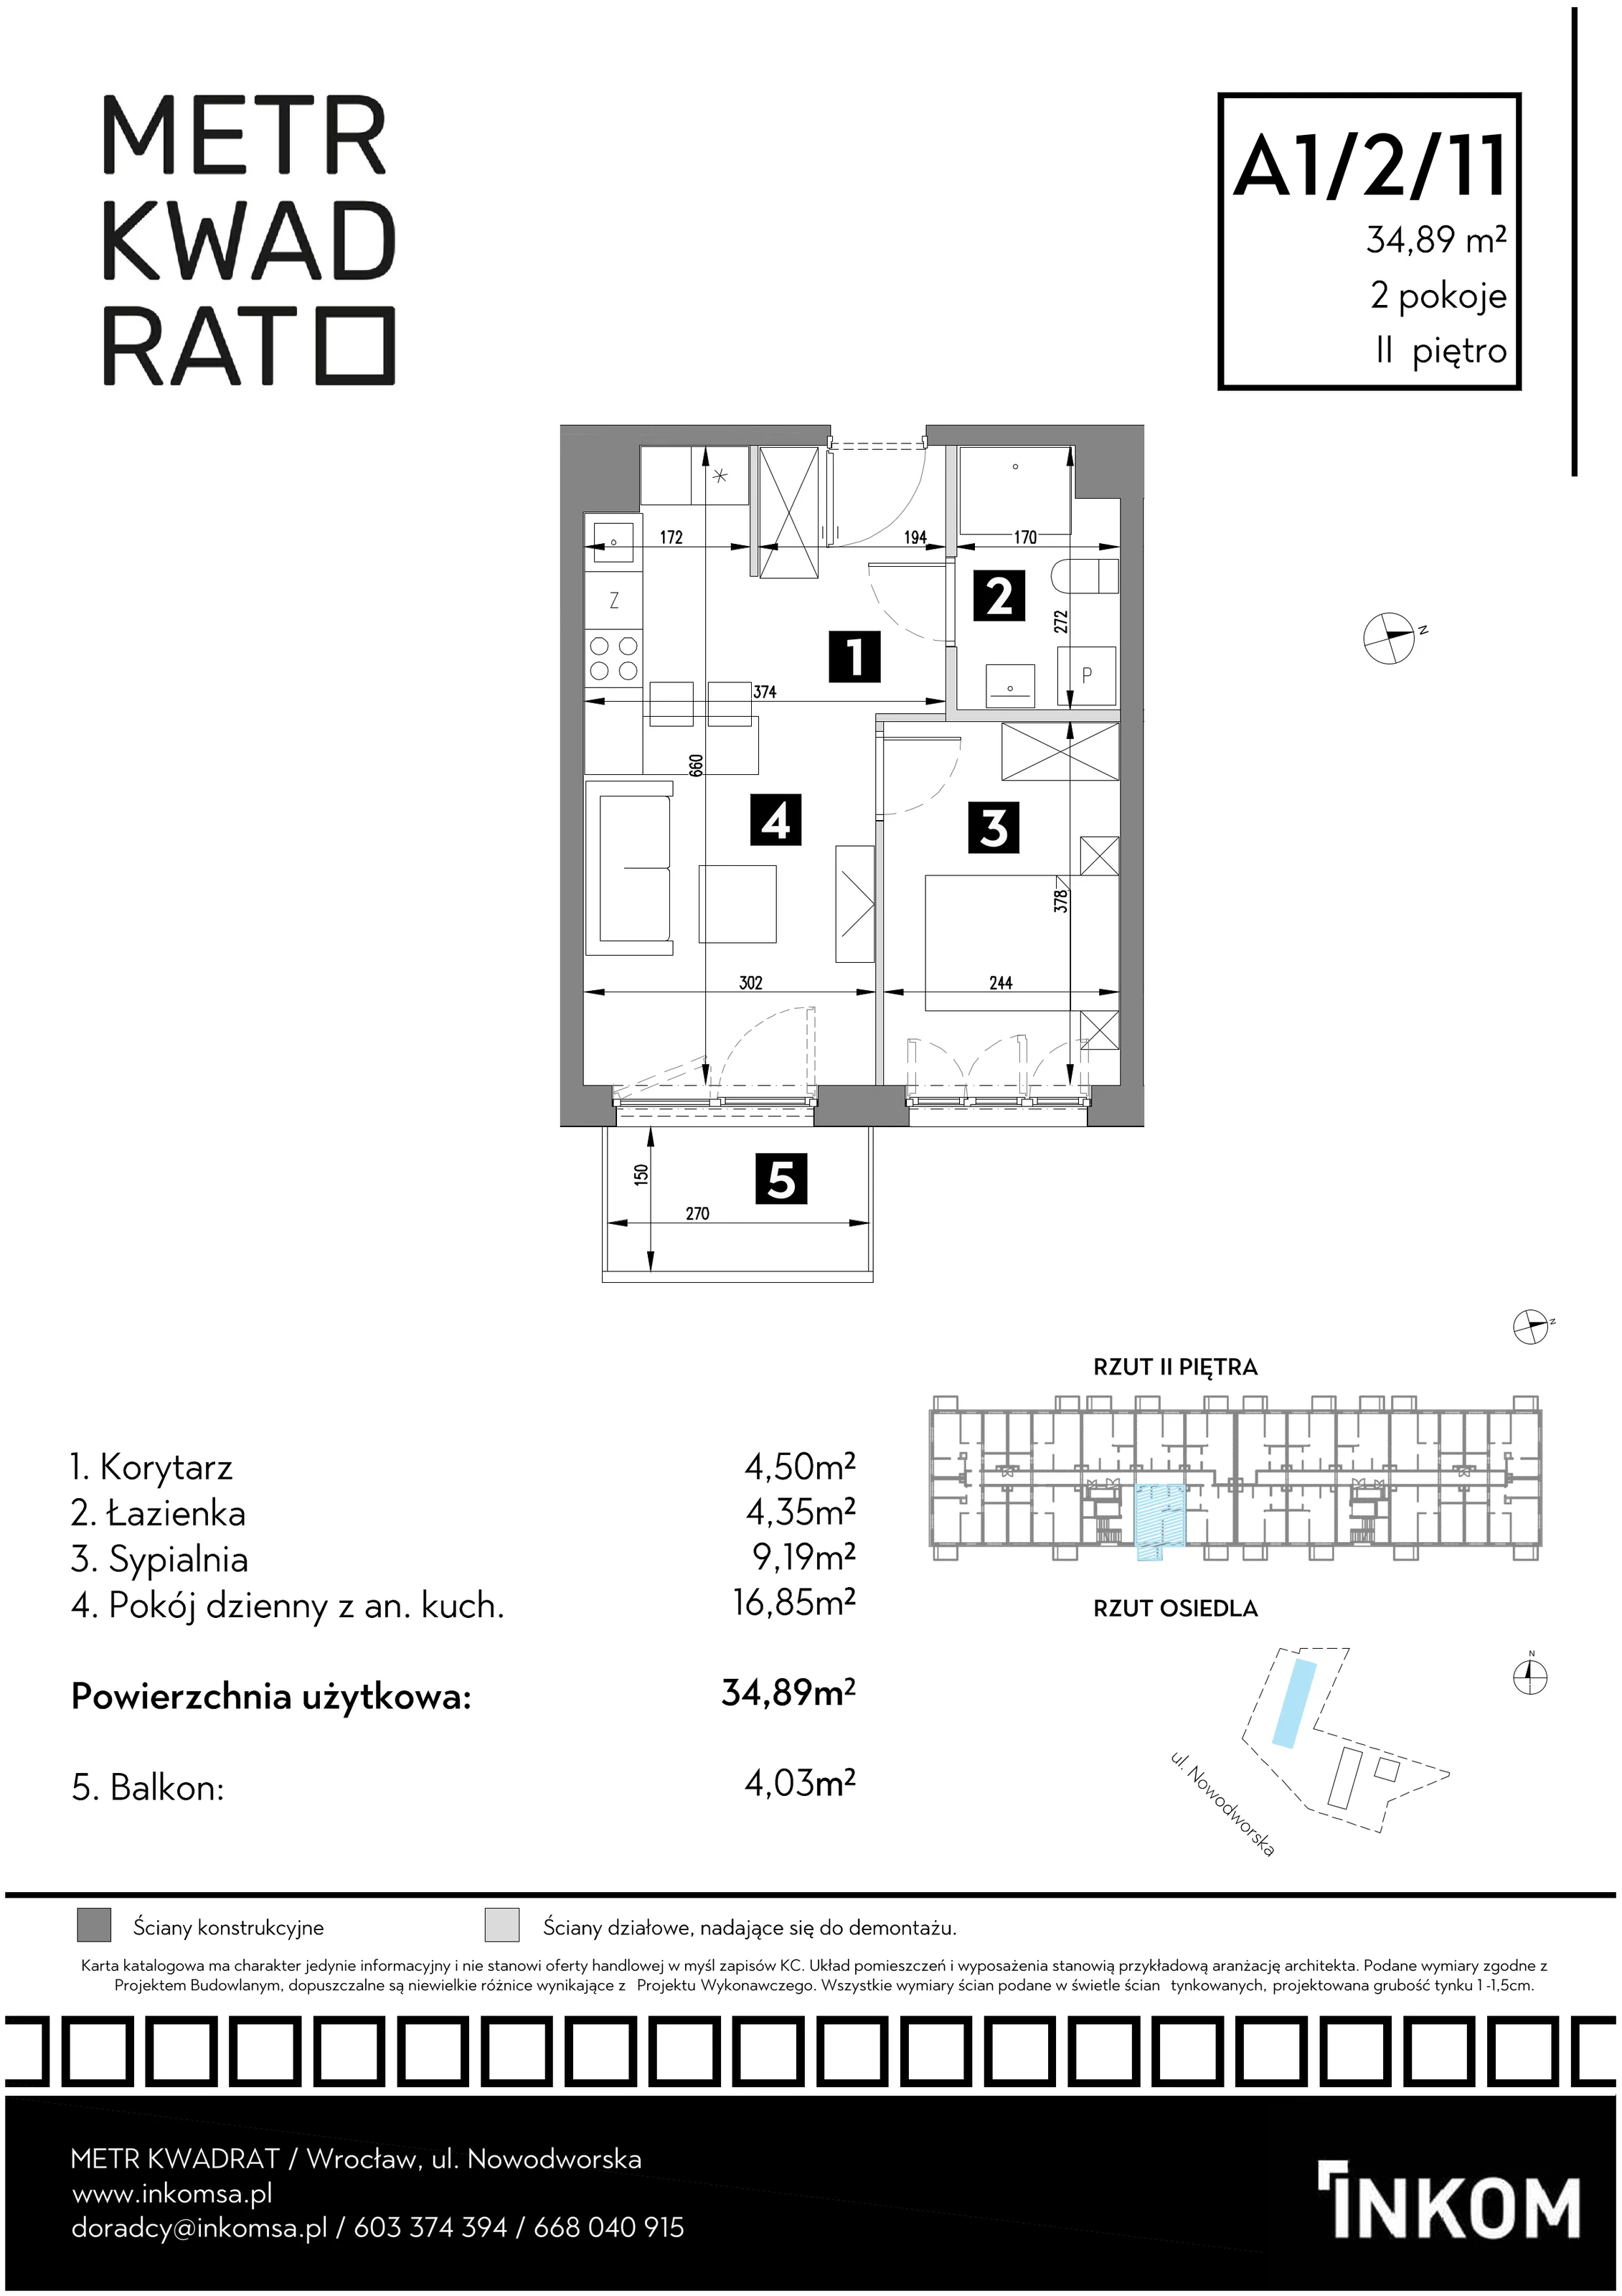 Mieszkanie 34,89 m², piętro 2, oferta nr A1/2/11, Metr Kwadrat, Wrocław, Nowy Dwór, ul. Nowodworska 17B